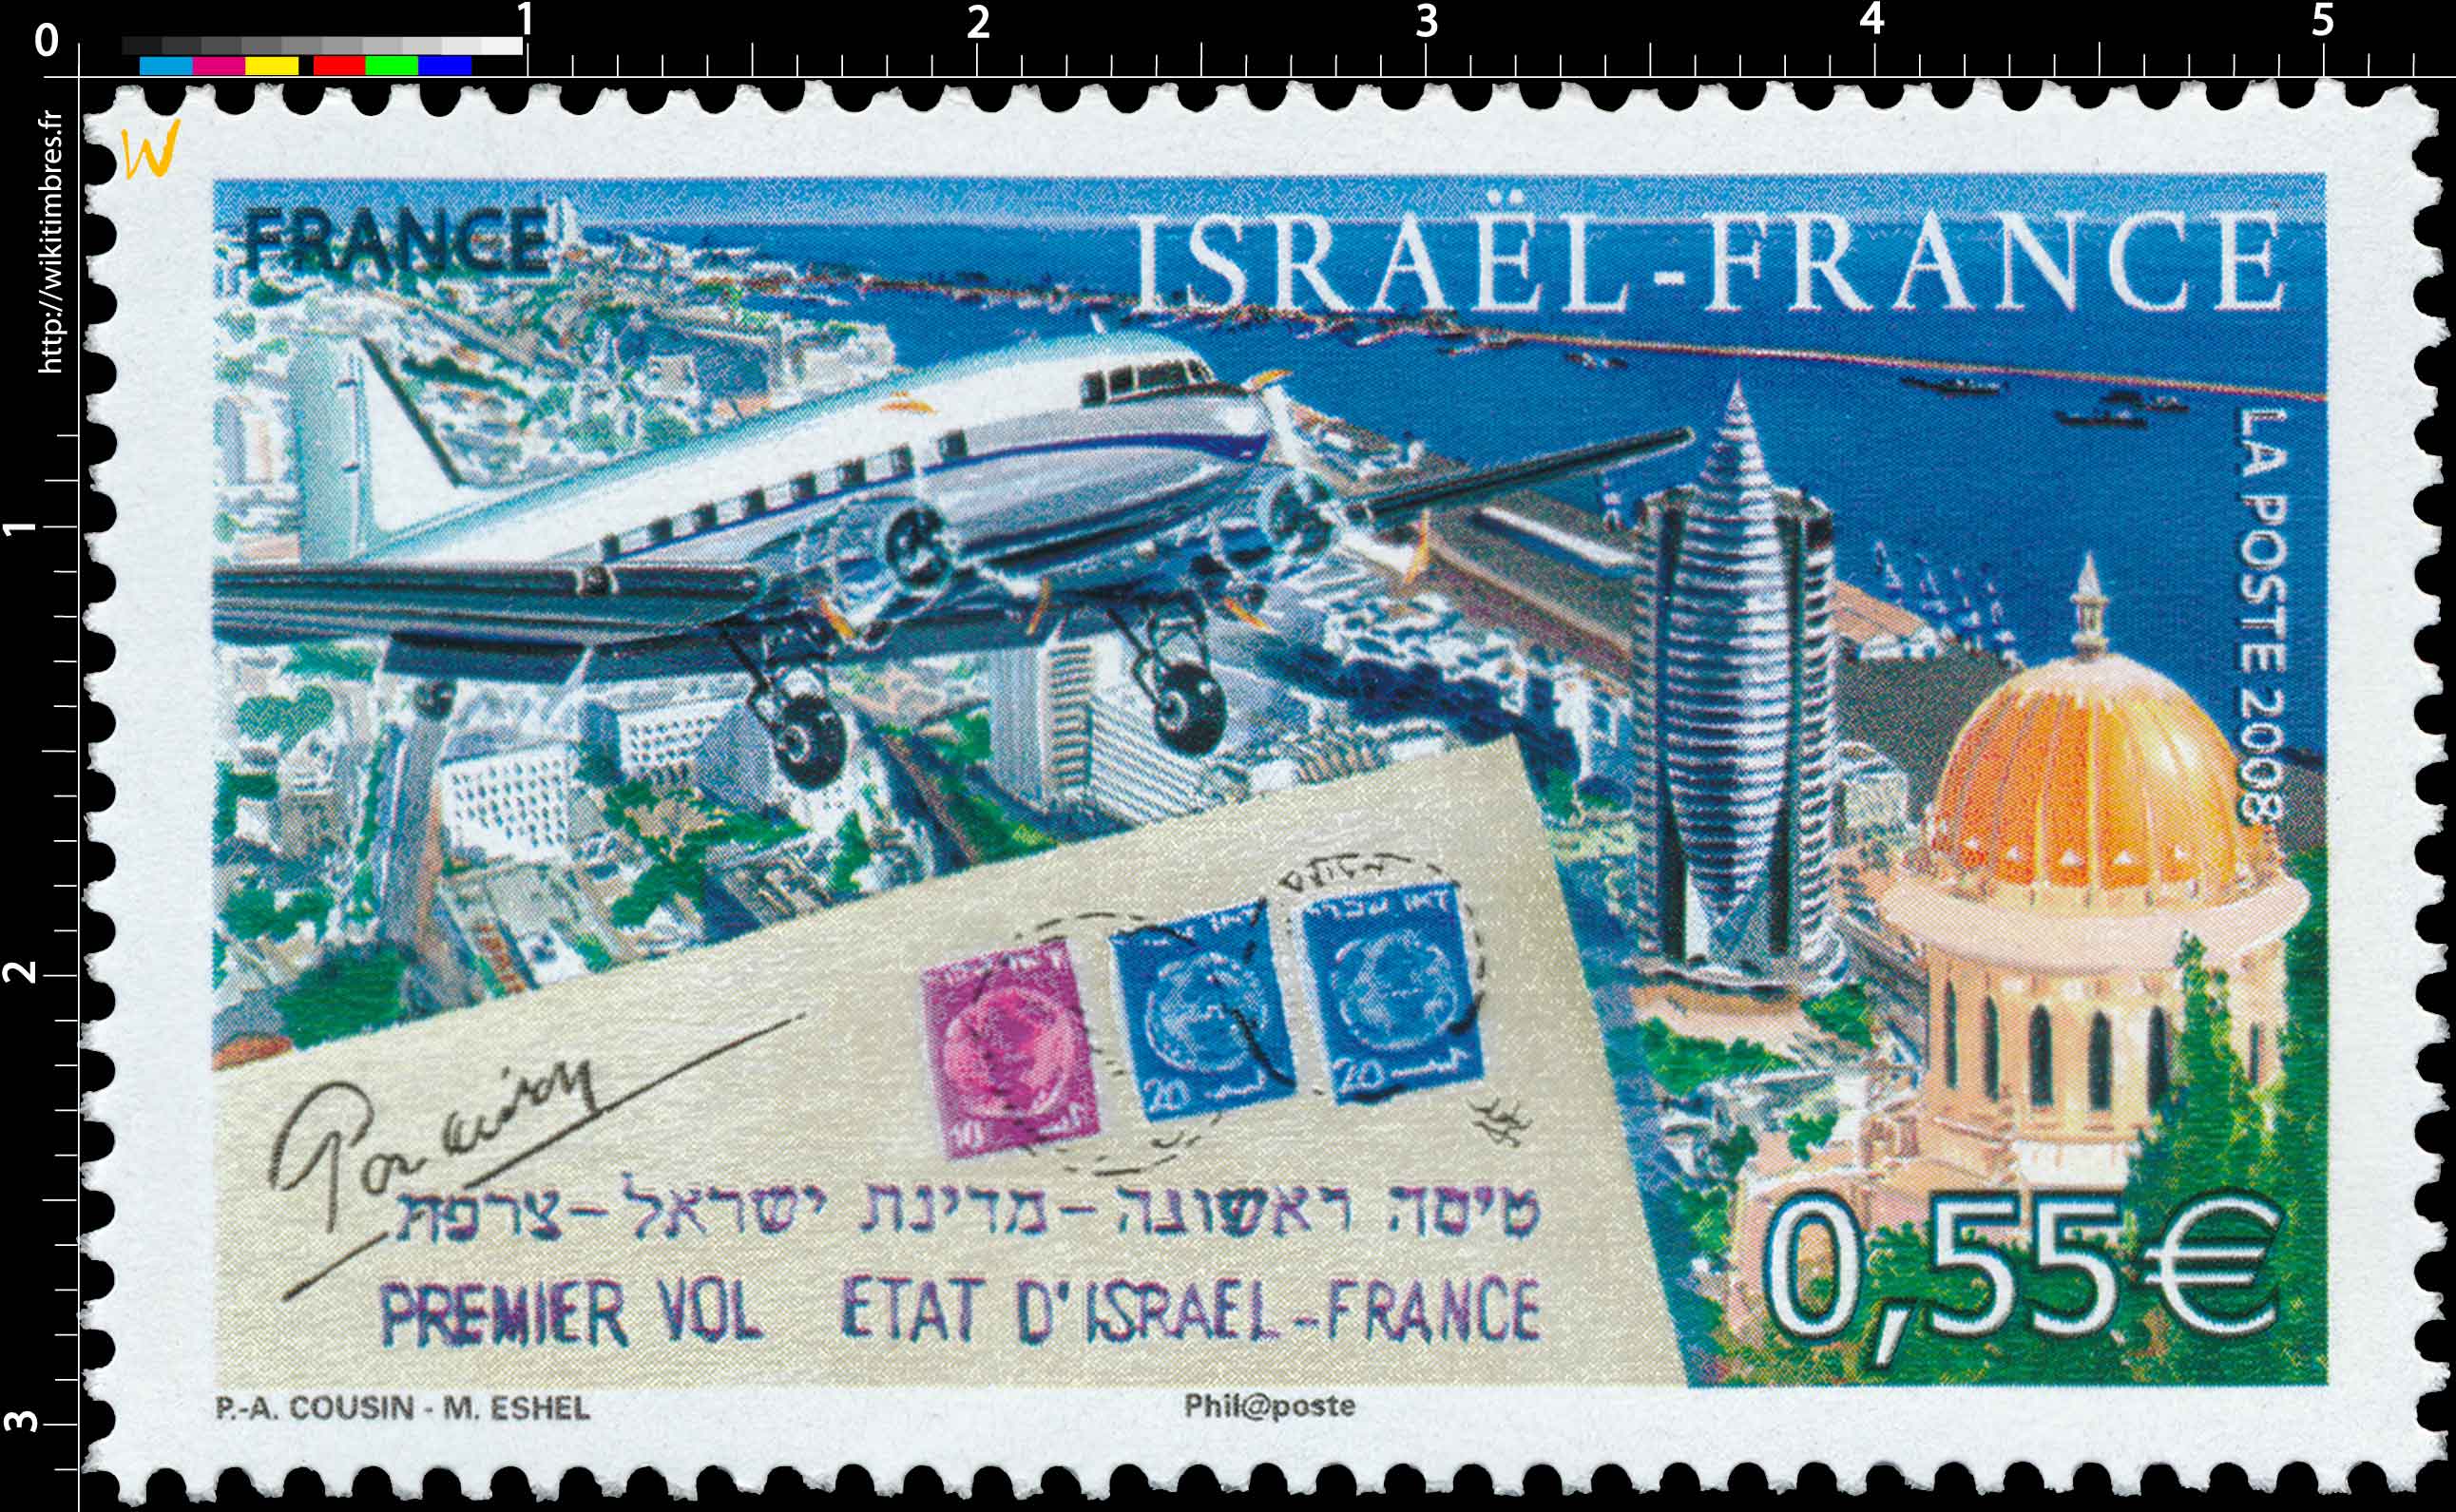 2008 ISRAËL-FRANCE PREMIER VOL ÉTAT D’ISRAËL - FRANCE